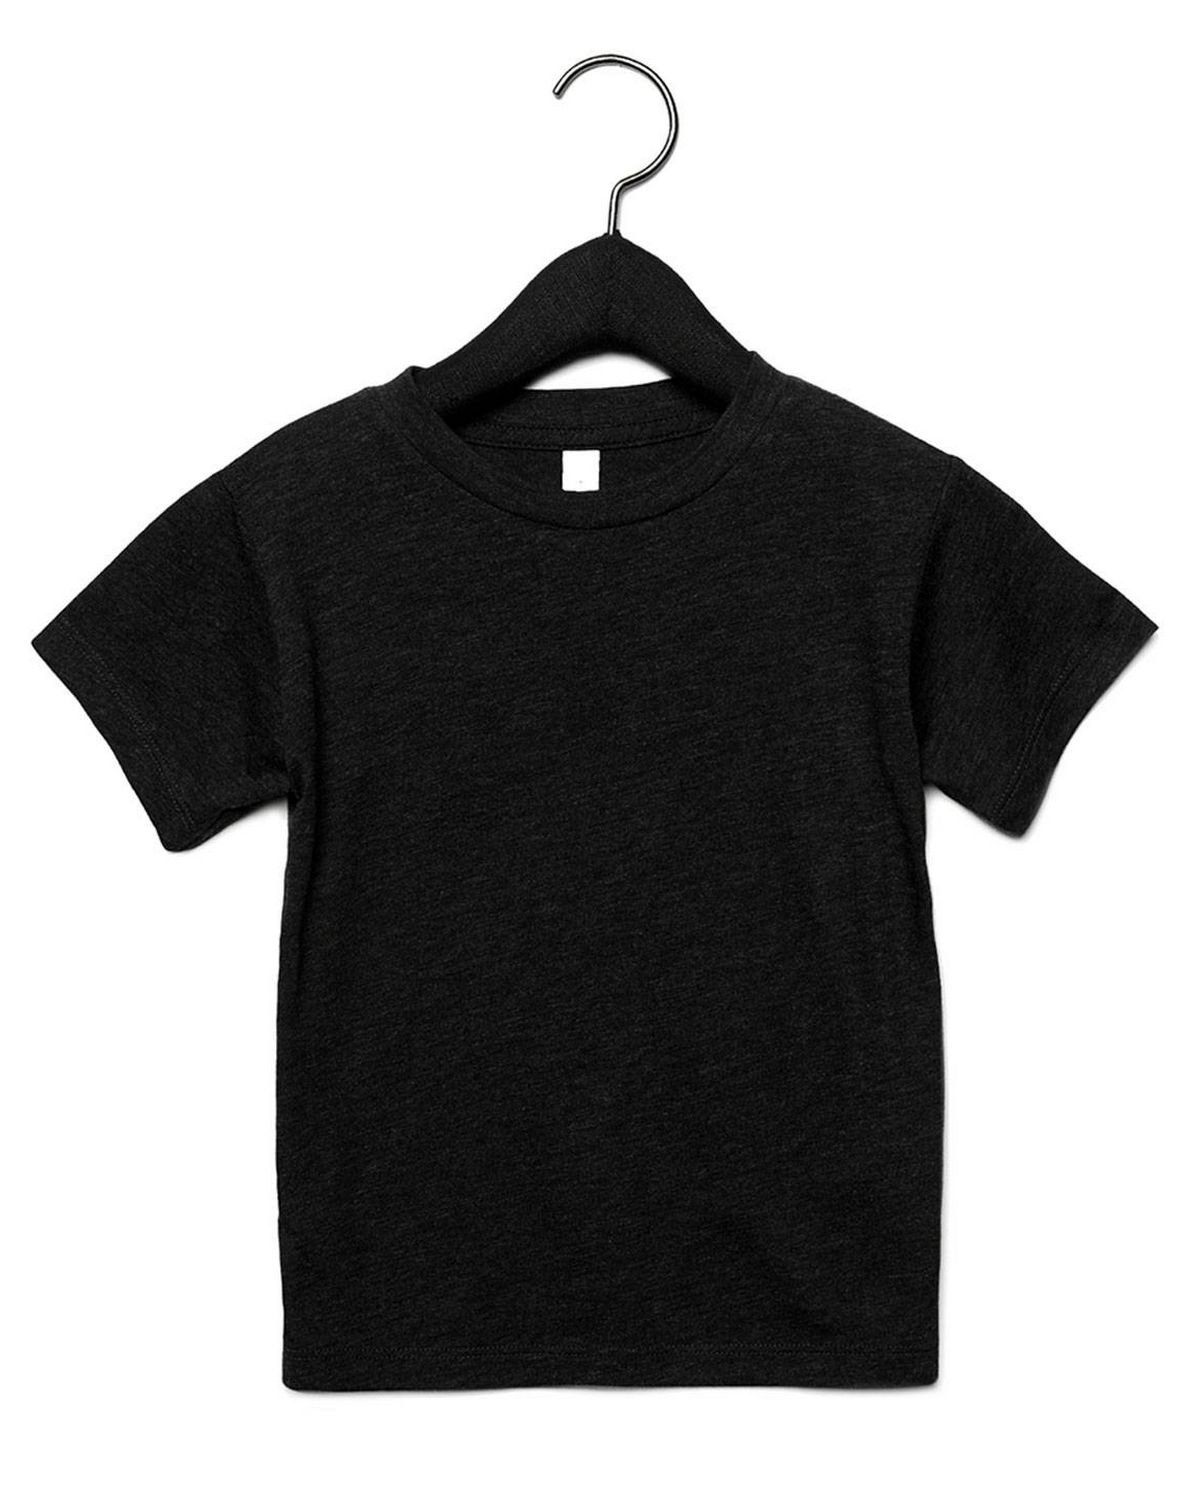 Canvas Brand T Shirts Size Chart